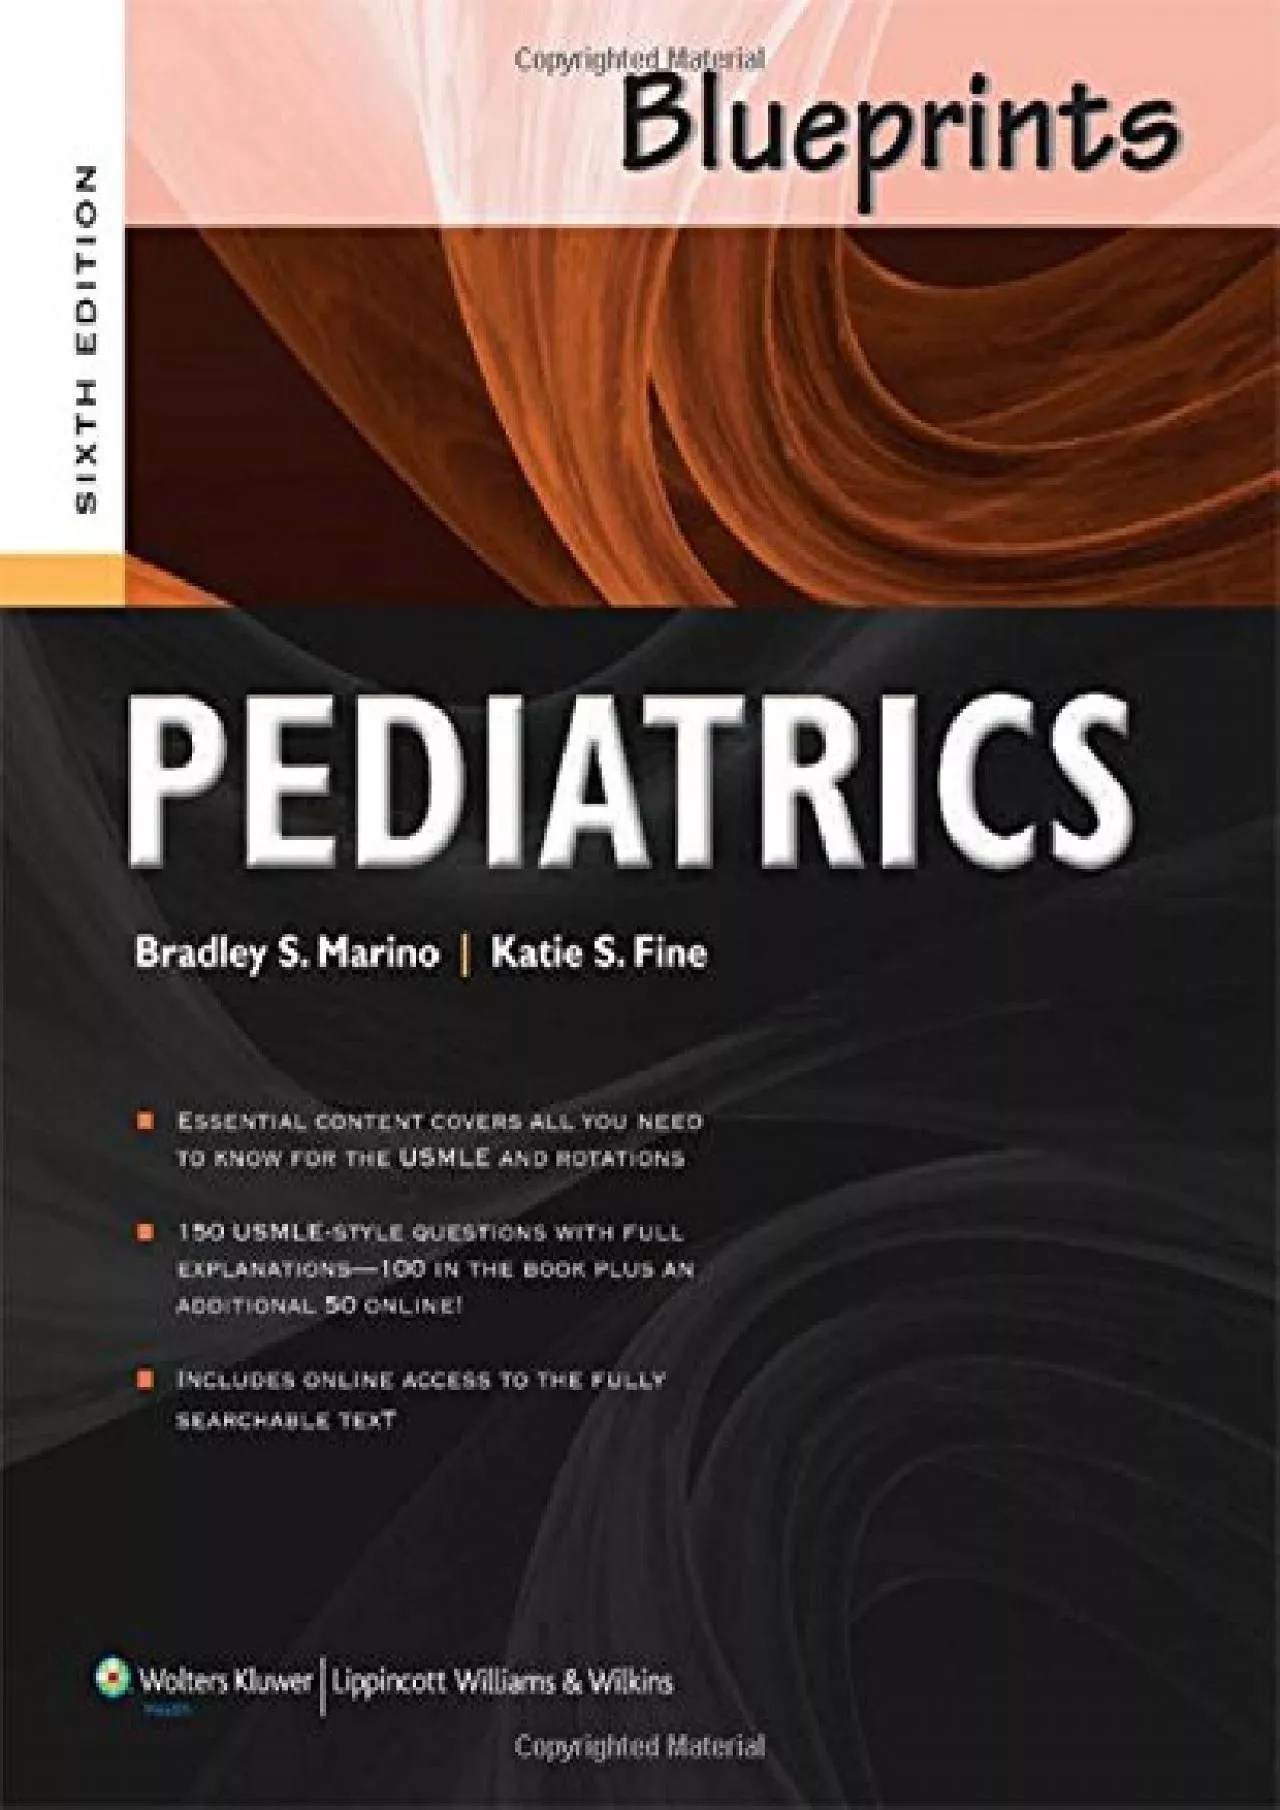 (DOWNLOAD)-Blueprints Pediatrics